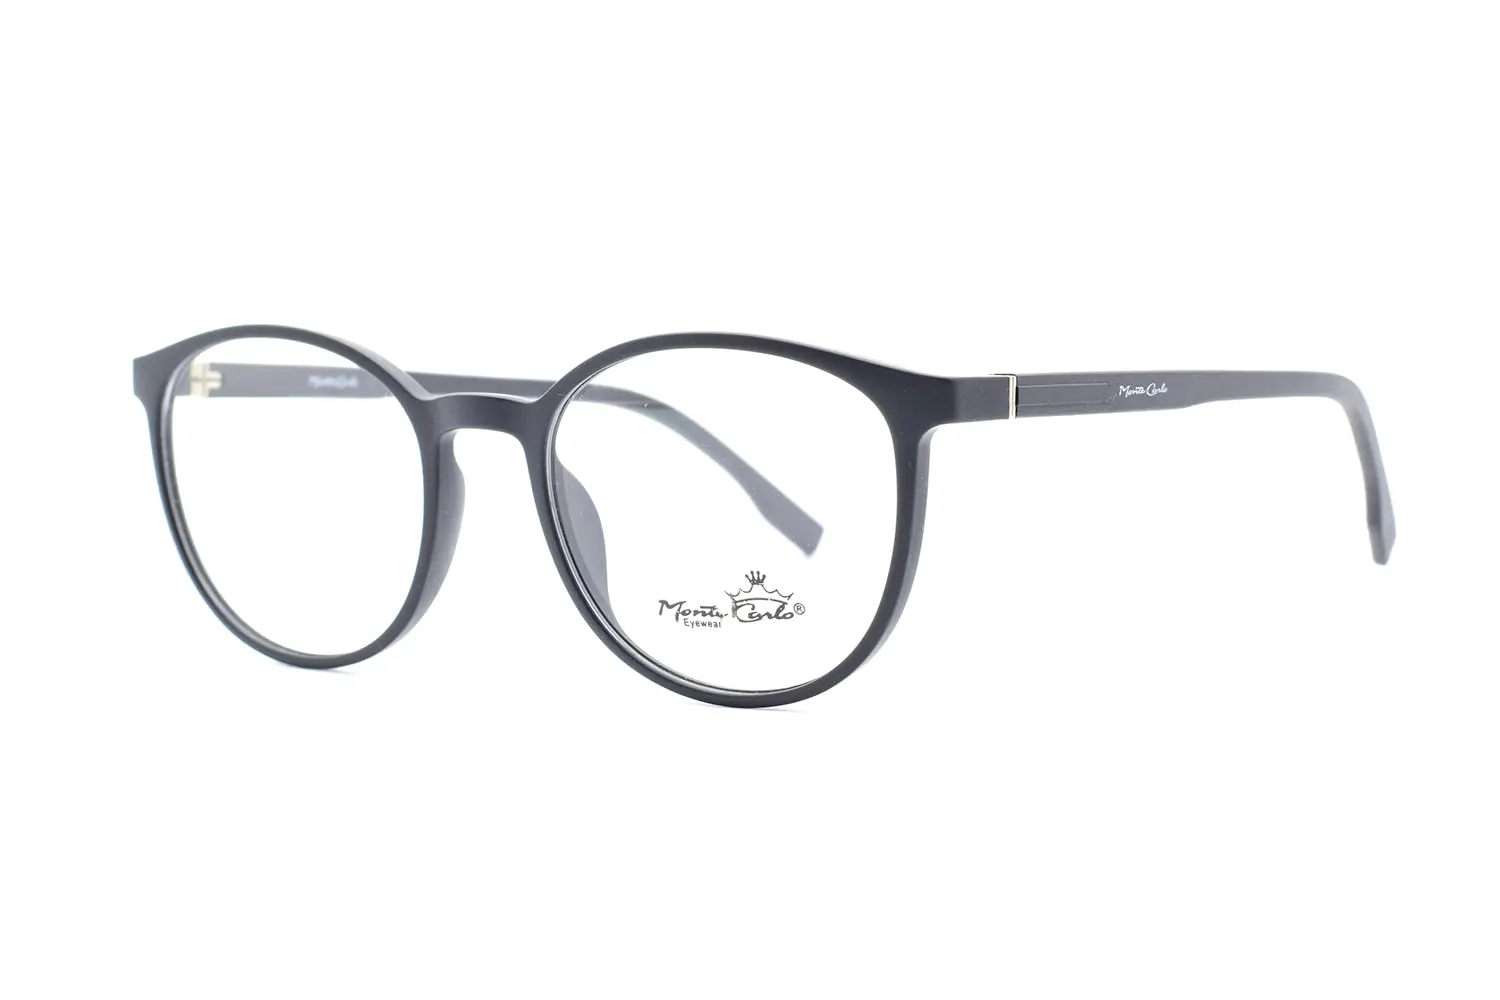 خرید عینک طبی Monte carlo mz19-26 c01